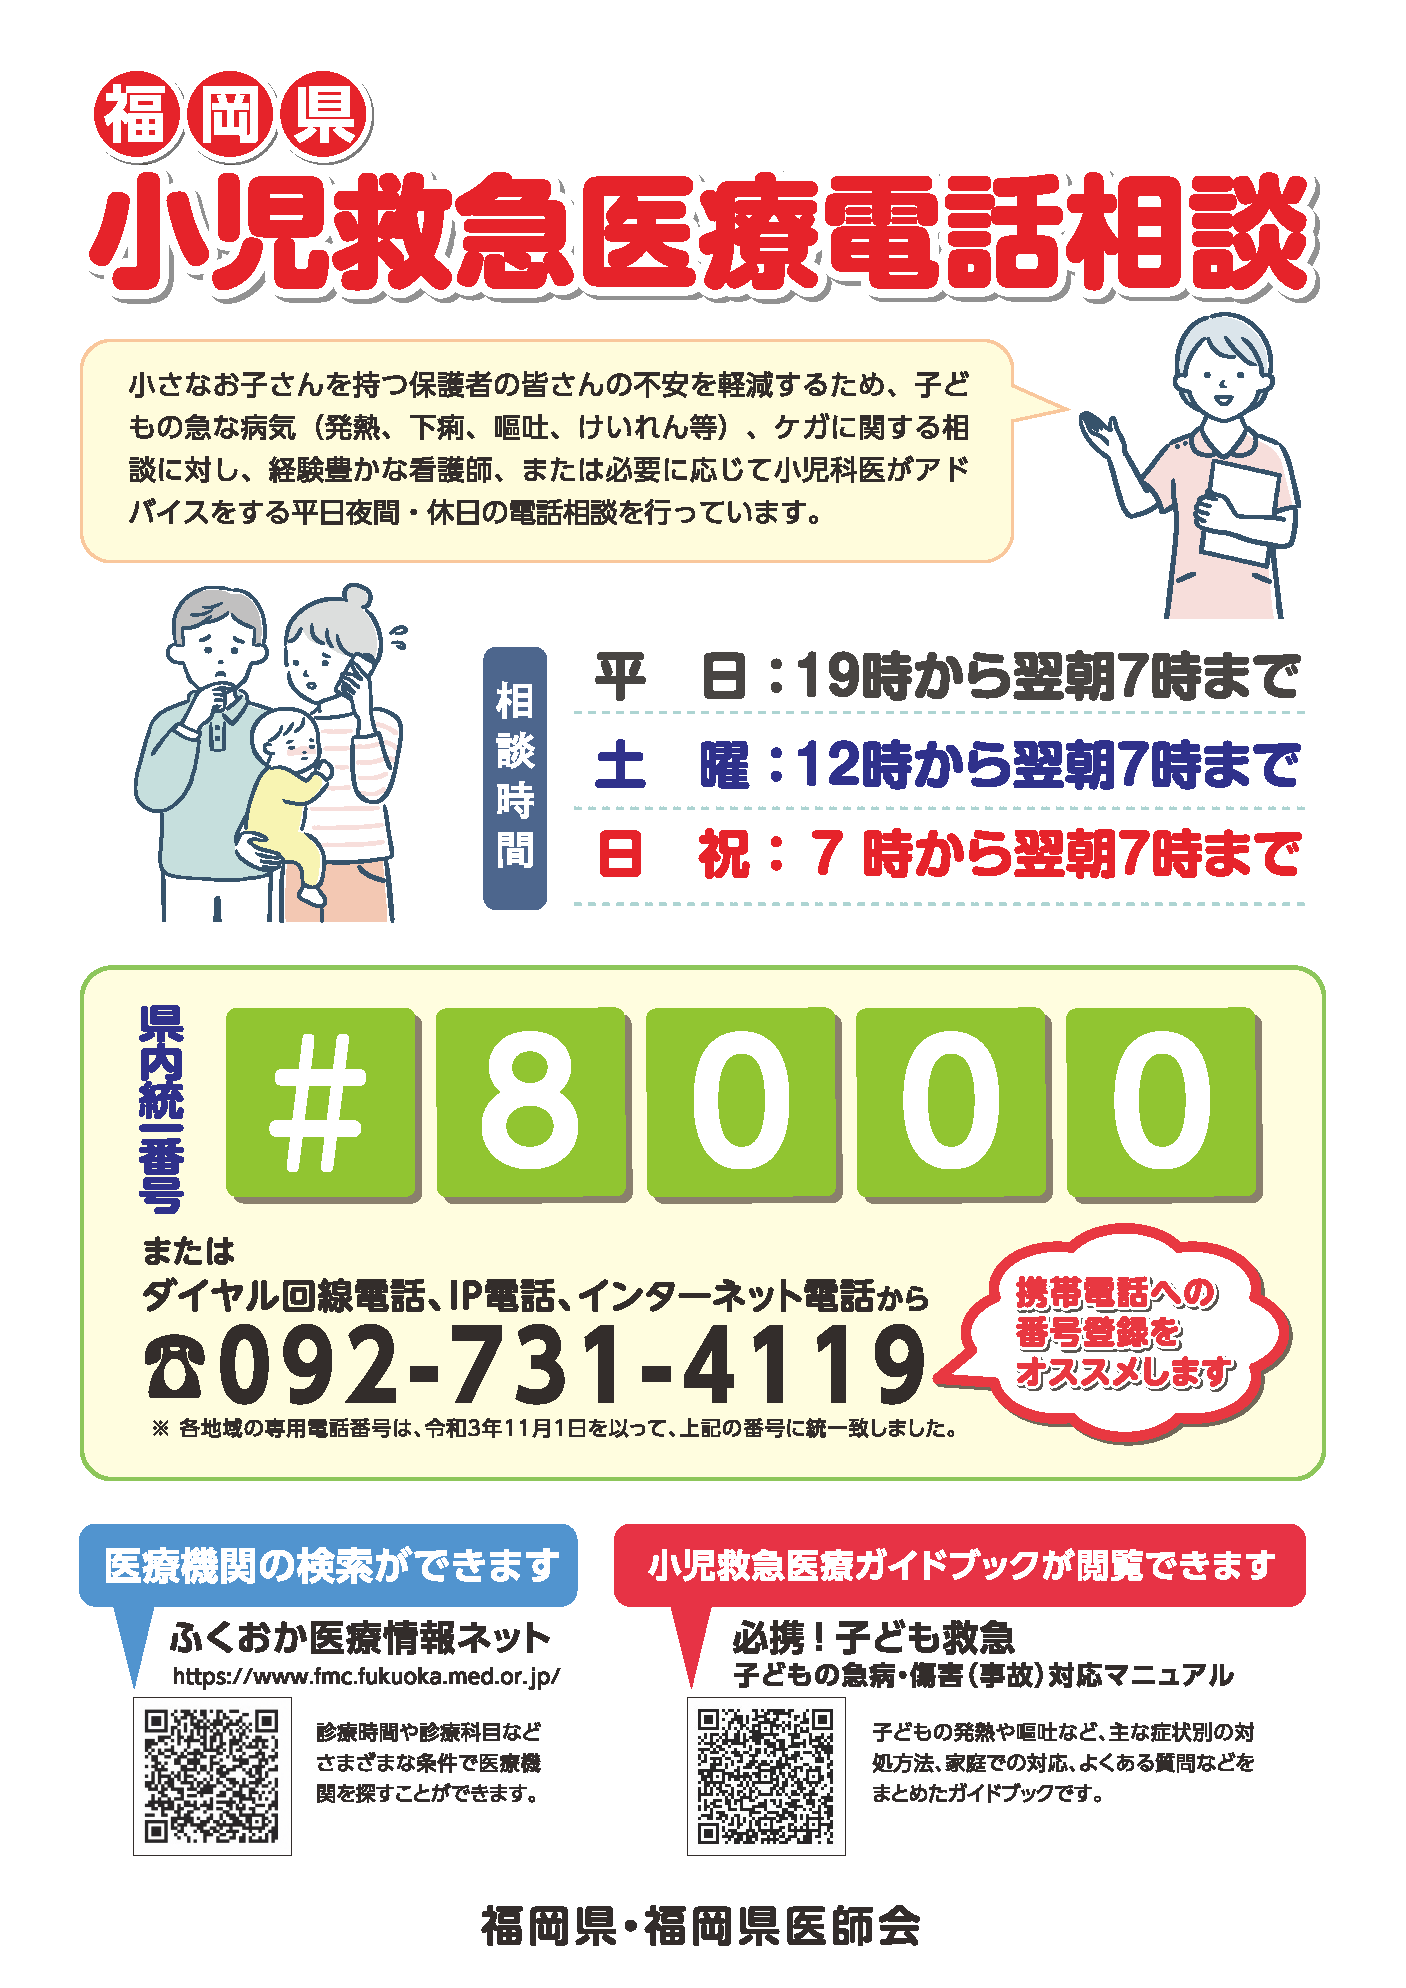 02：福岡県小児救急医療電話相談ポスターデータ.png